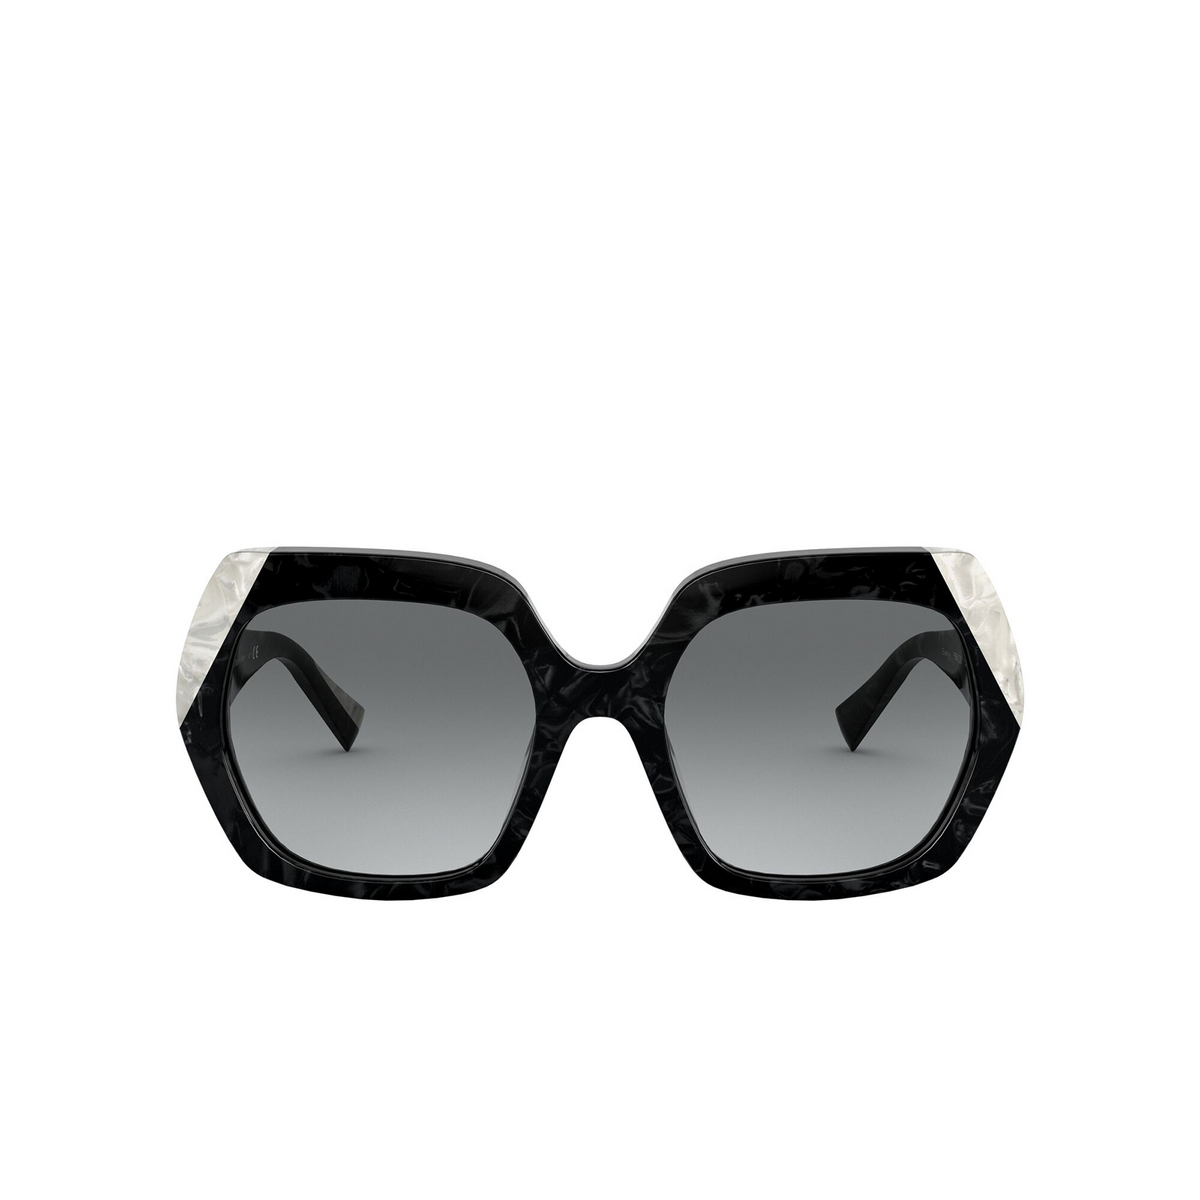 Alain Mikli® Square Sunglasses: Evanne A05054 color Noir Mikli / Blanc Mikli 001/11 - front view.